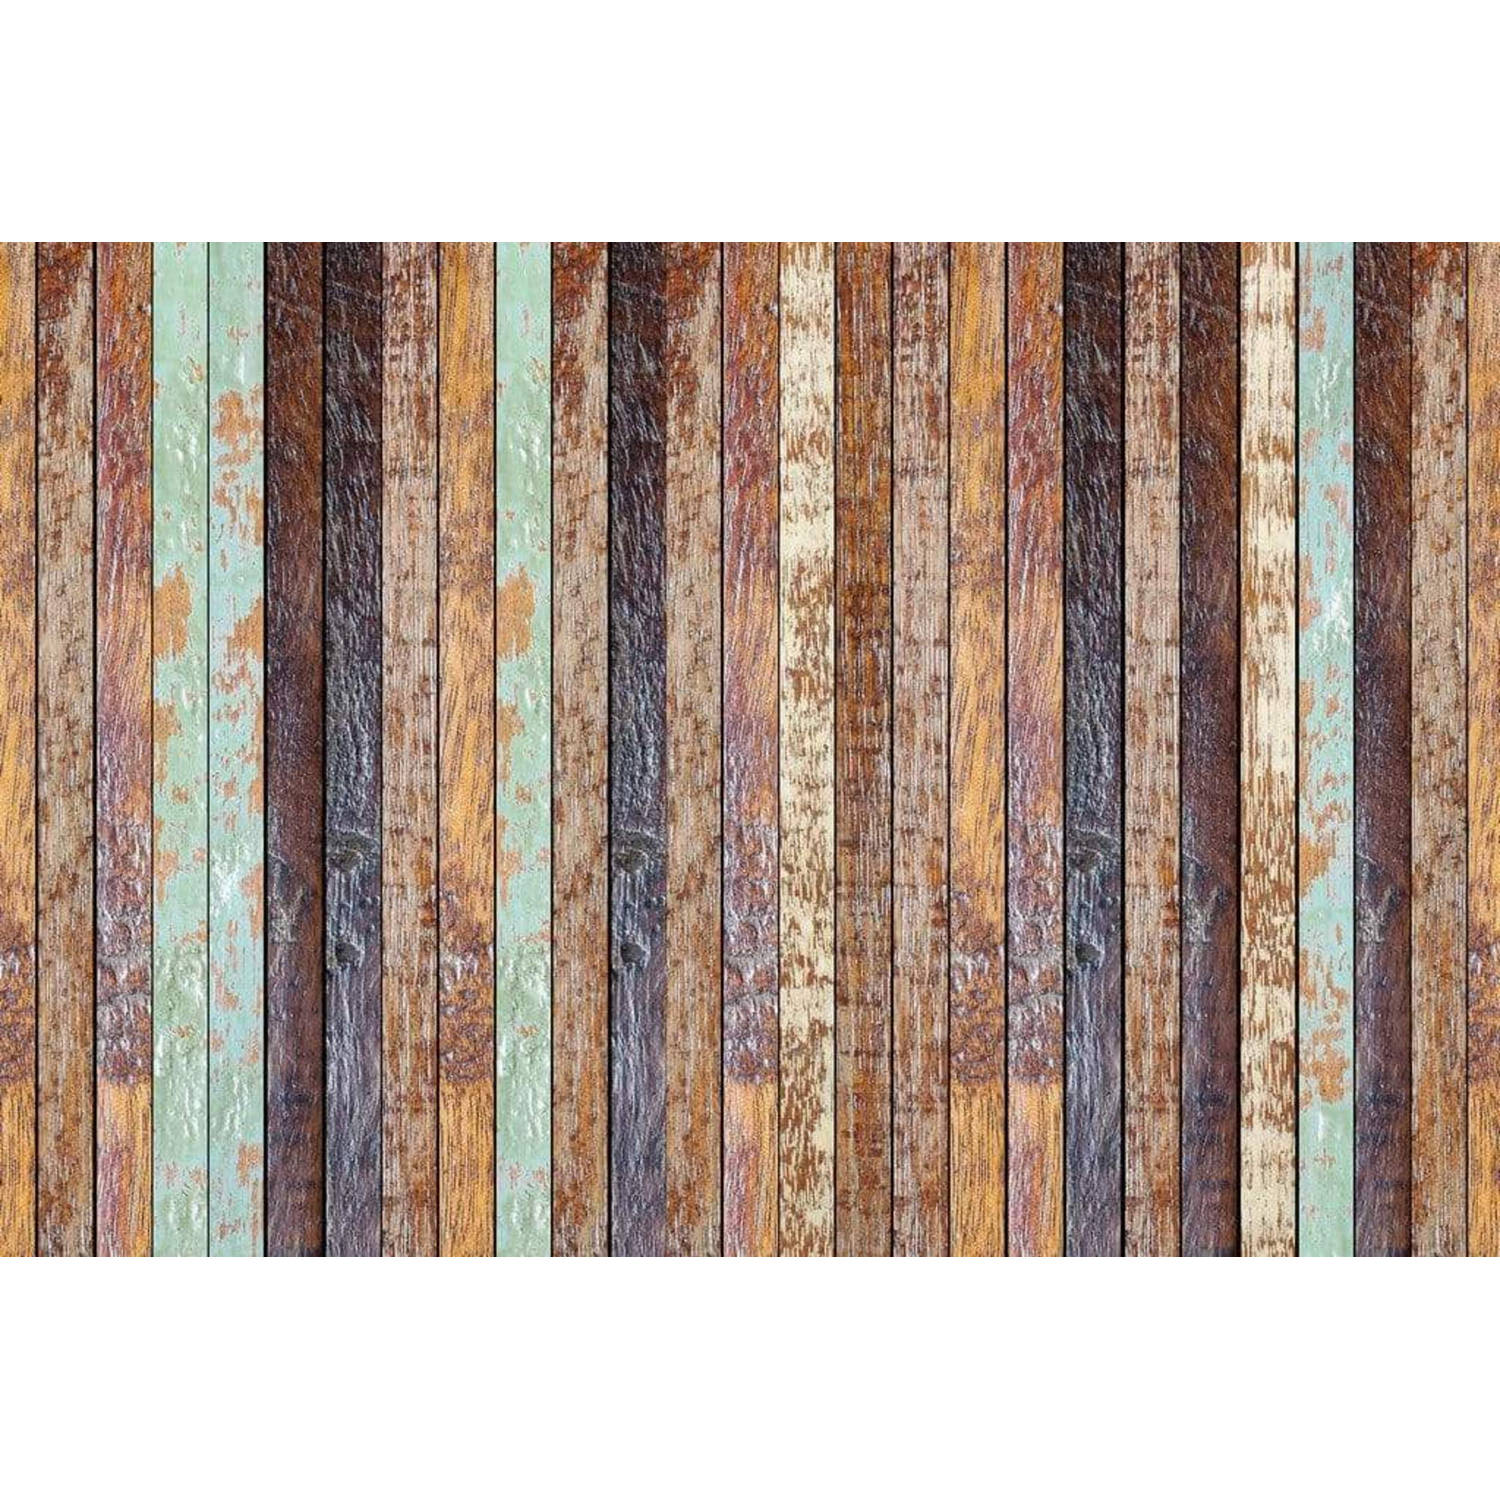 Wizard+genius Vintage Wooden Wall Vlies Fotobehang 384x260cm 8-banen